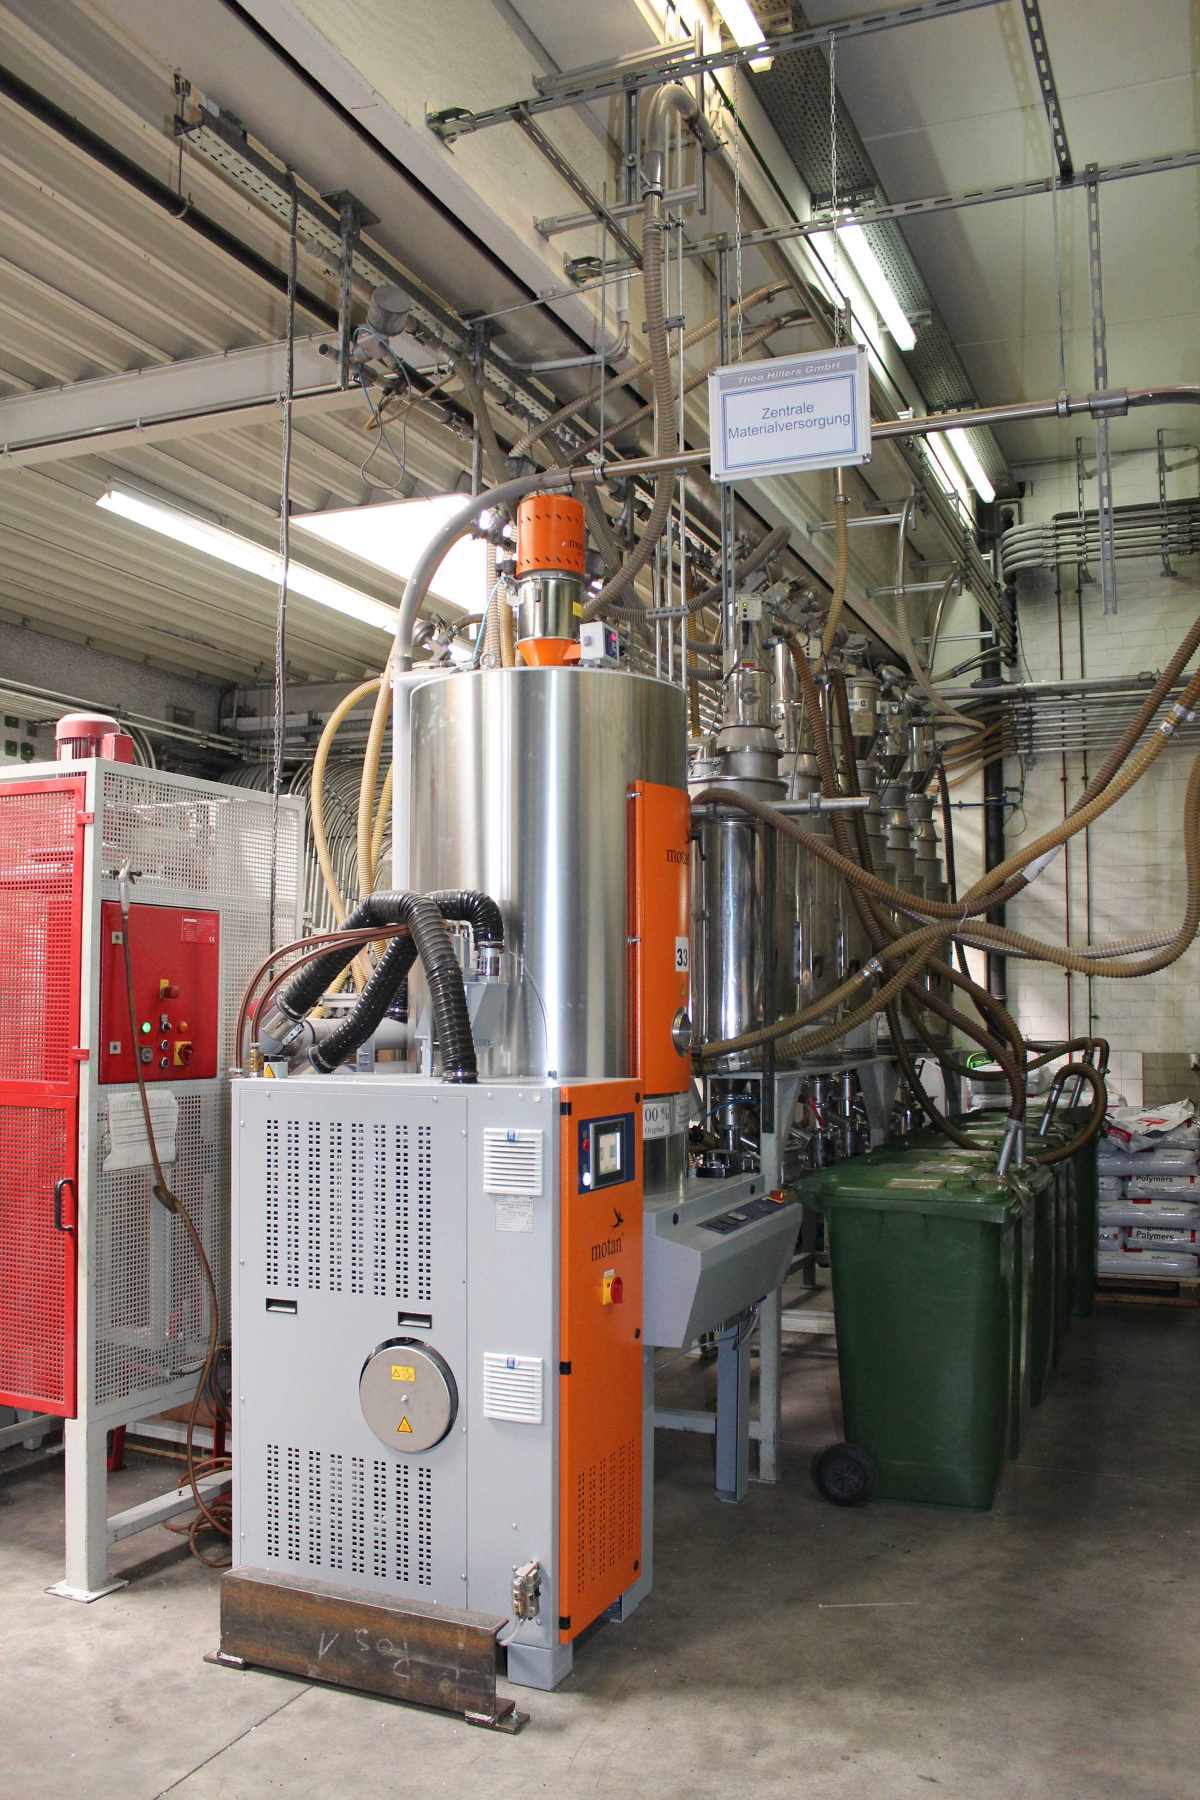 Vybaven automatickou nivelací teploty a rosného bodu (ATTN), reguluje generátor suchého vzduchu Luxor A 120 rosný bod procesního pívodního vzduchu s pesností ±1°C